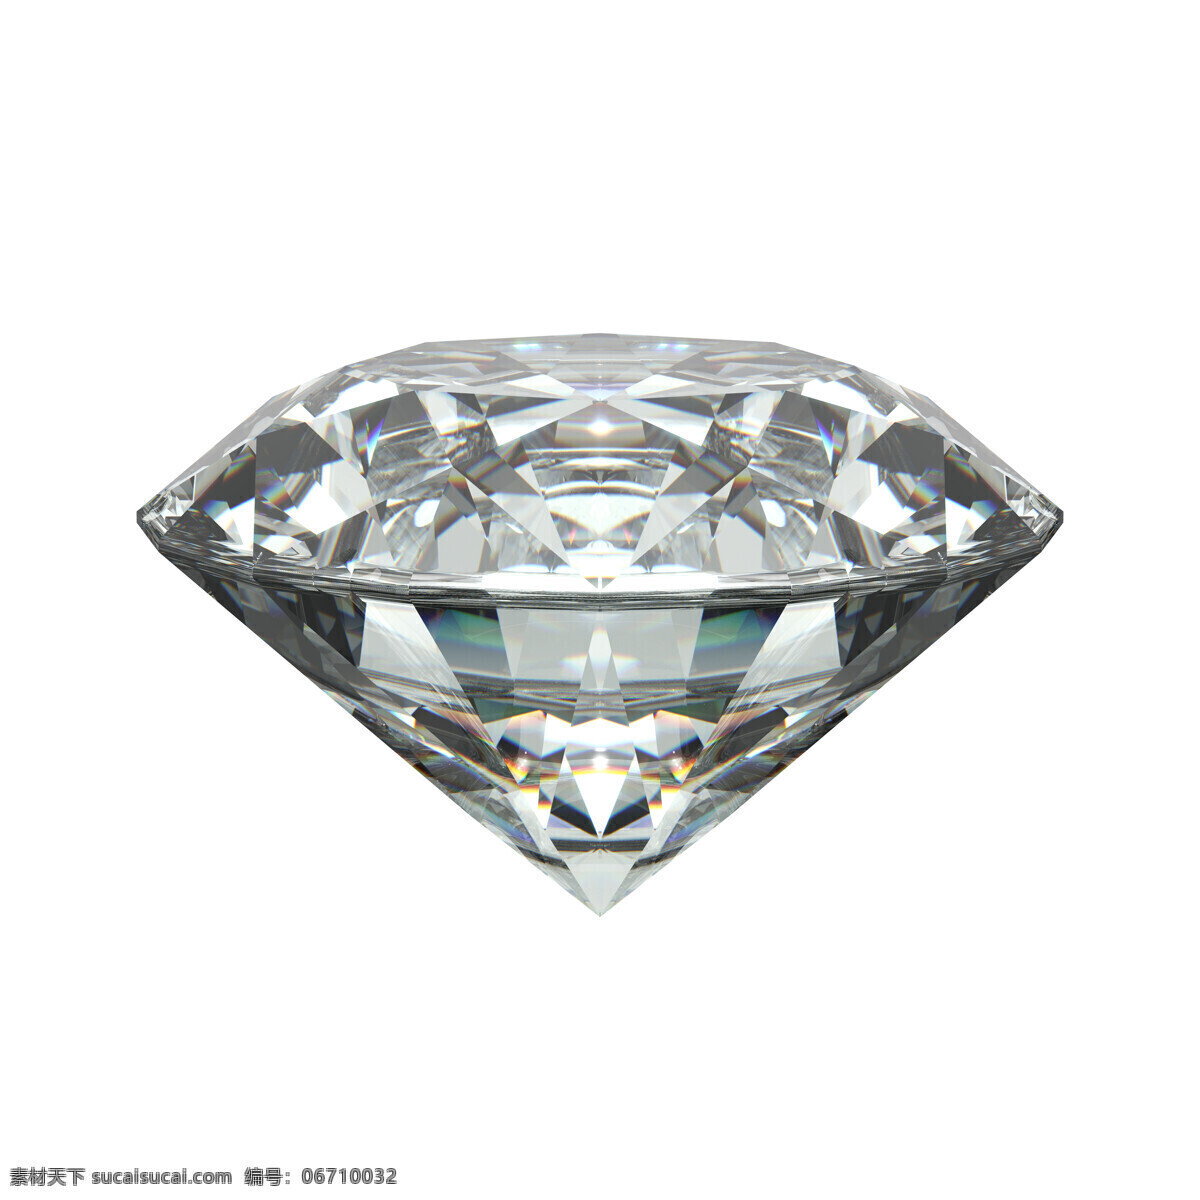 晶莹 剔透 蓝色钻石 大钻石 钻石素材 白色钻石 宝石 珠宝 南非钻石 心形钻石 金刚石 裸钻 彩钻 钻戒 珍珠 生活百科 生活素材